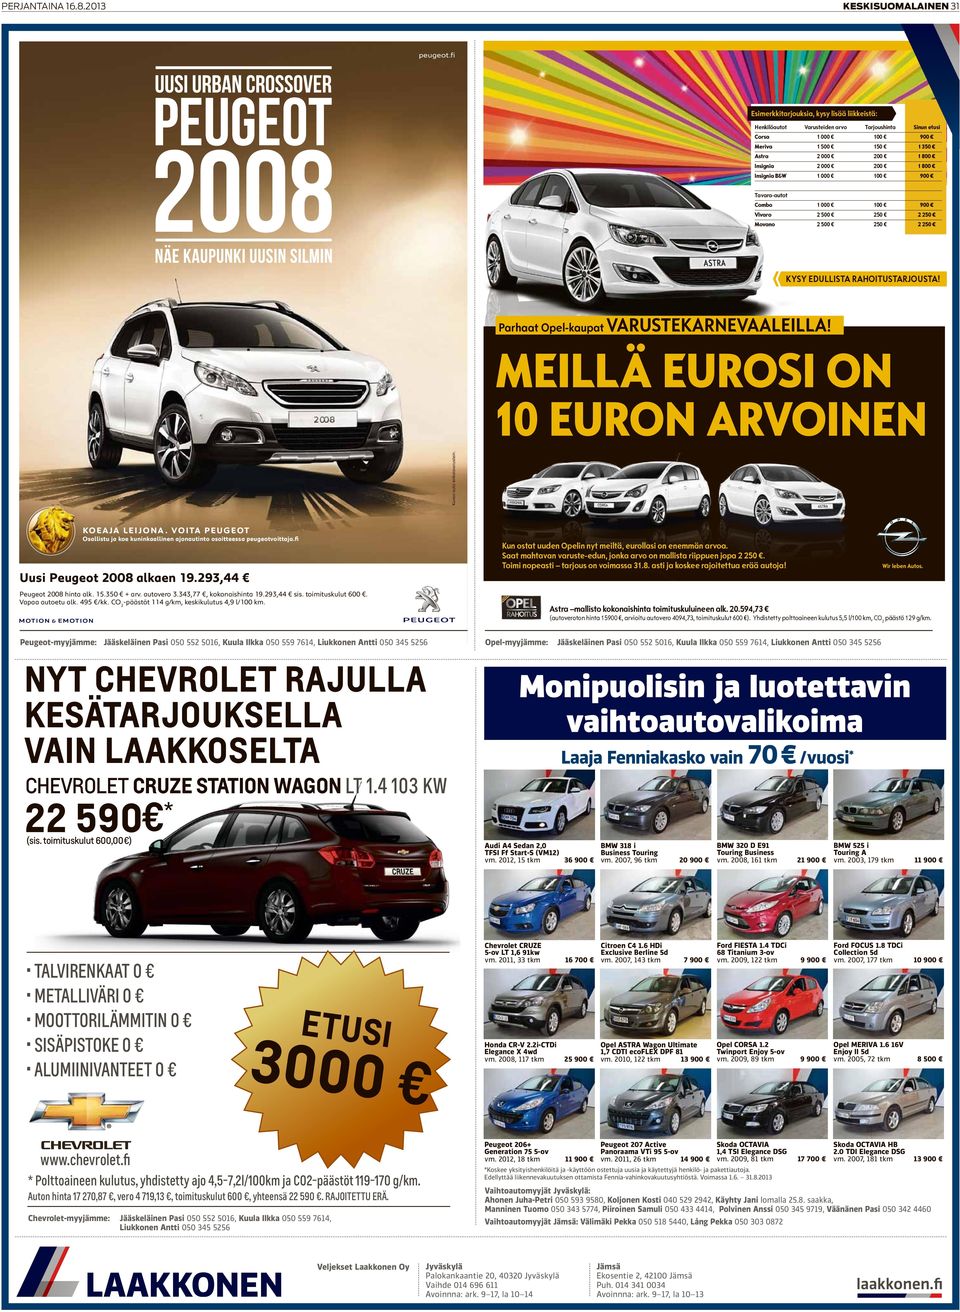 Insignia B&W 1 000 100 900 tavara-autot Combo 1 000 100 900 Vivaro 2 500 250 2 250 Movano 2 500 250 2 250 kysy edullista rahoitustarjousta! Parhaat Opel-kaupat VarustekarneVaaleilla!